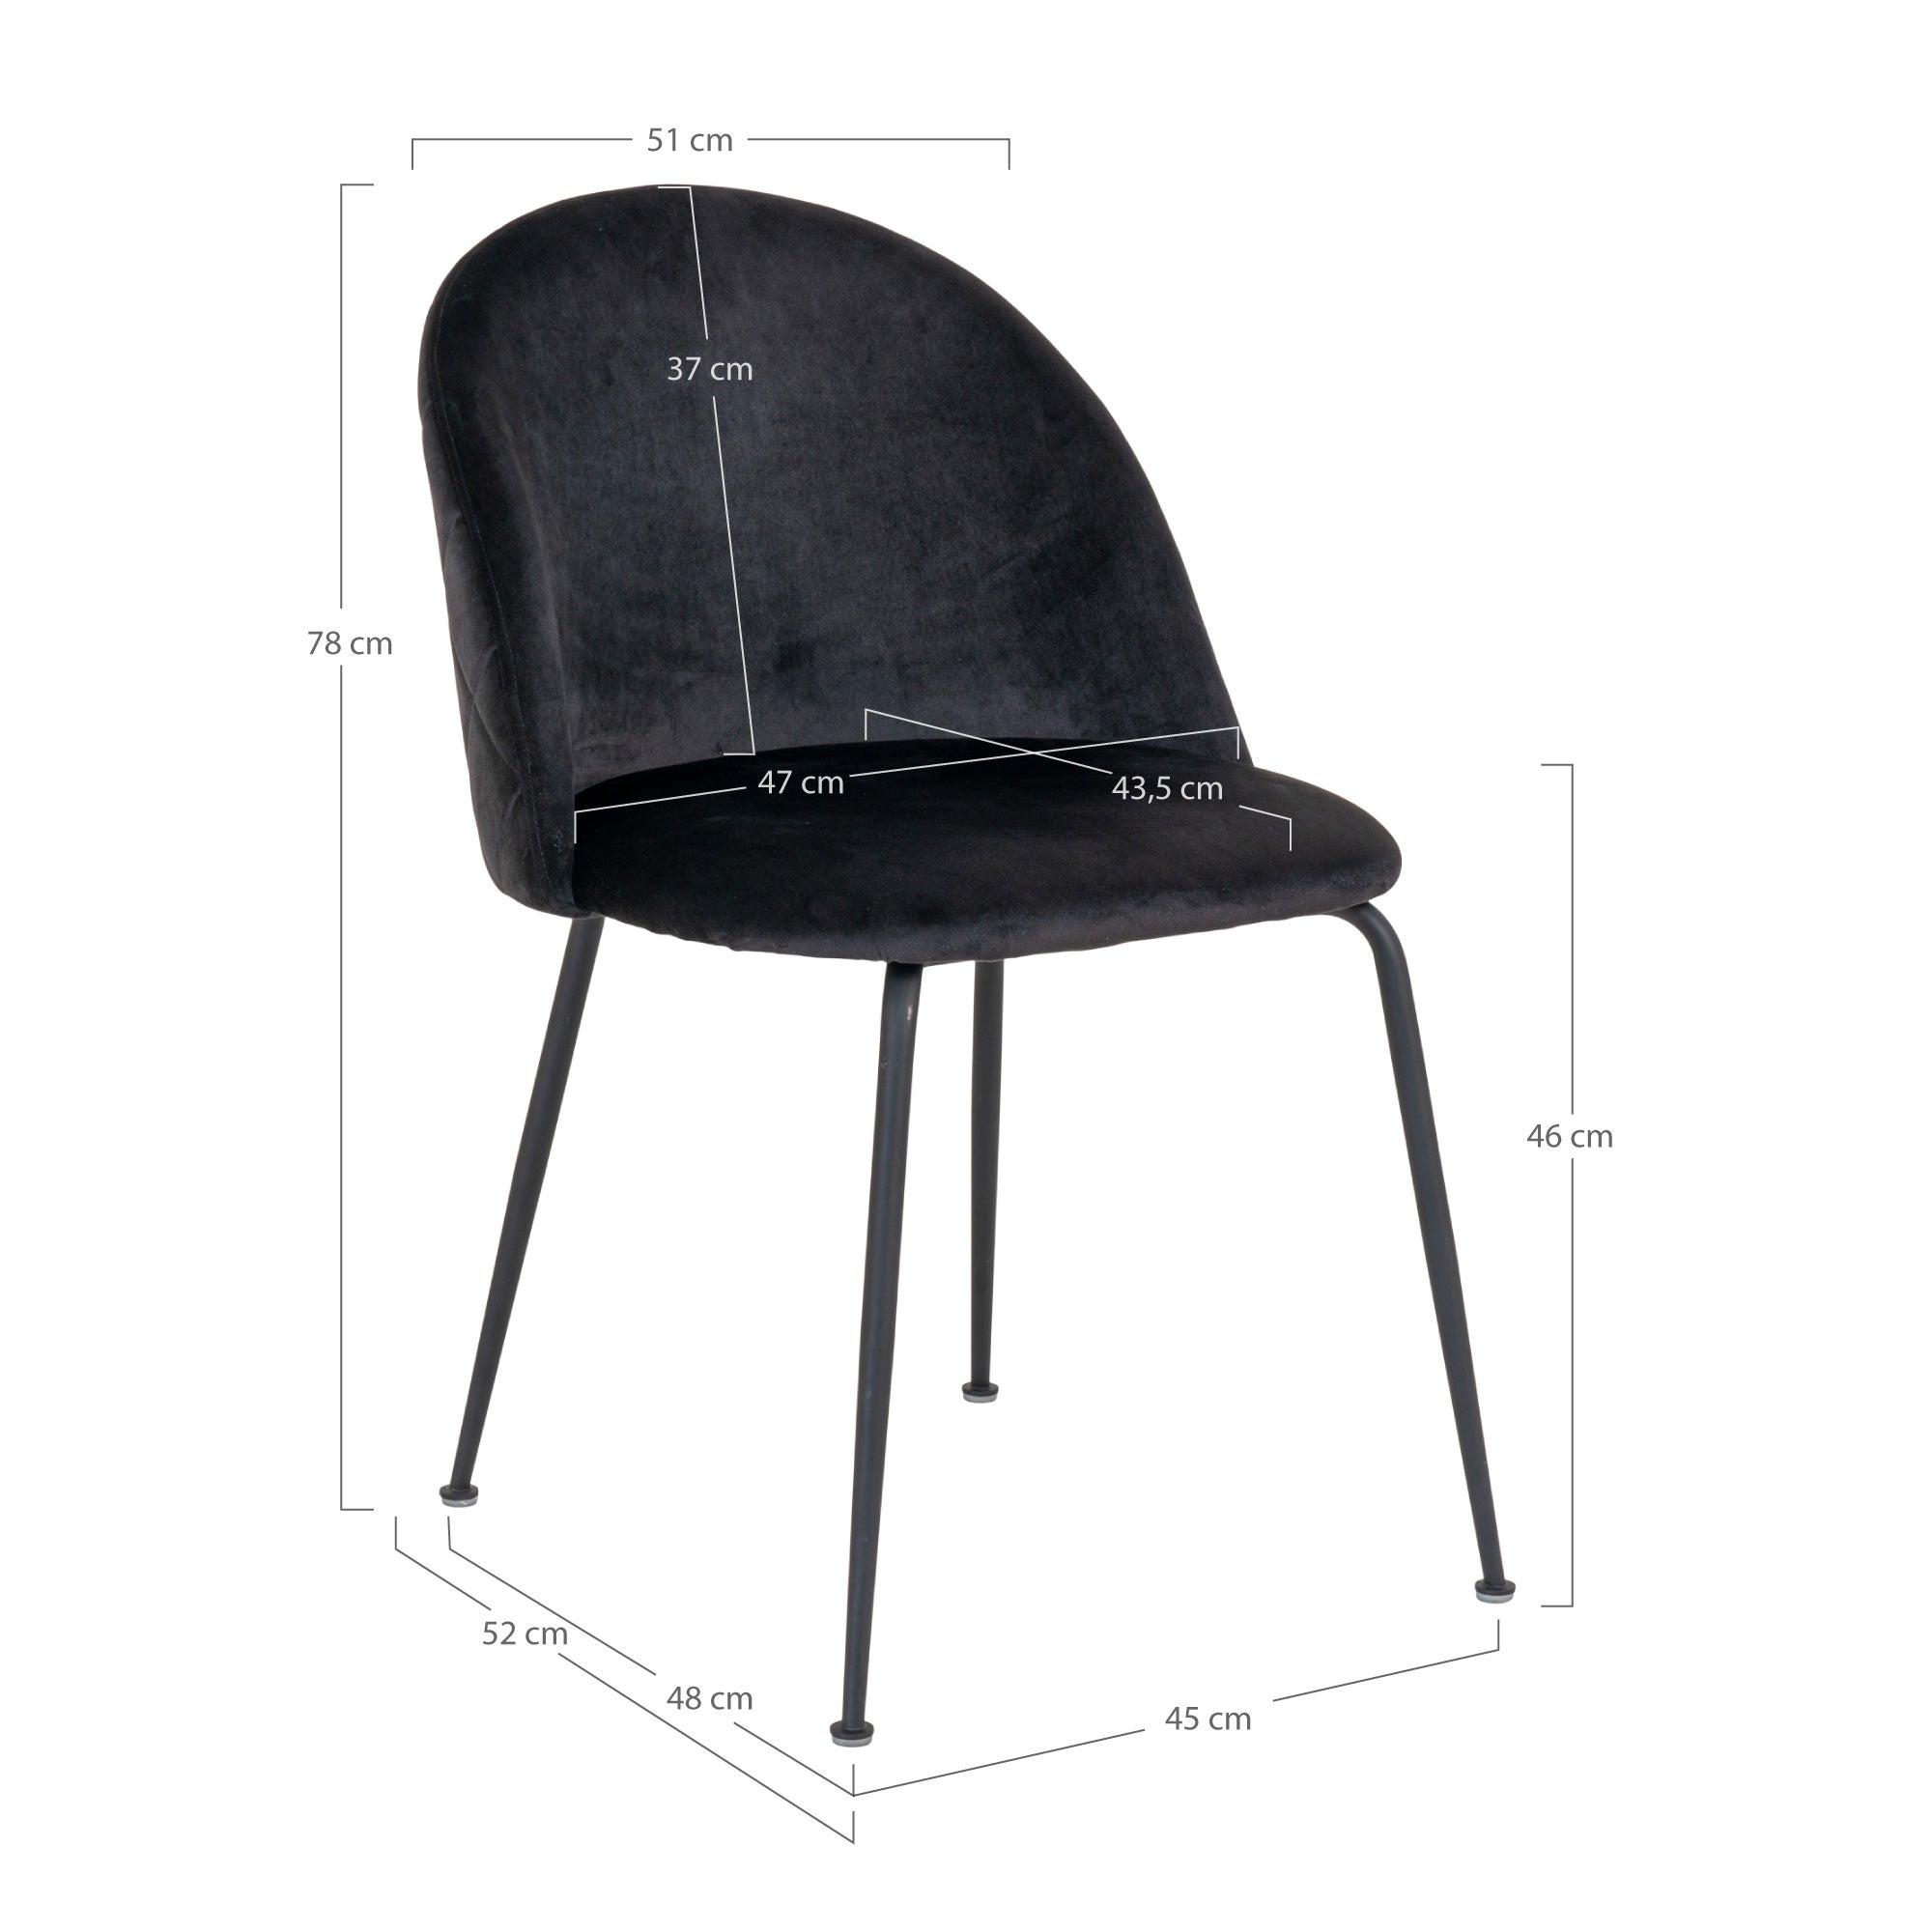 Geneve Spisebordsstol - Spisebordsstol I Velour, Sort Med Sorte Ben, Hn1207 ⎮ Sæt af 2 stk. ⎮ 5713917017270 ⎮ 1001258 